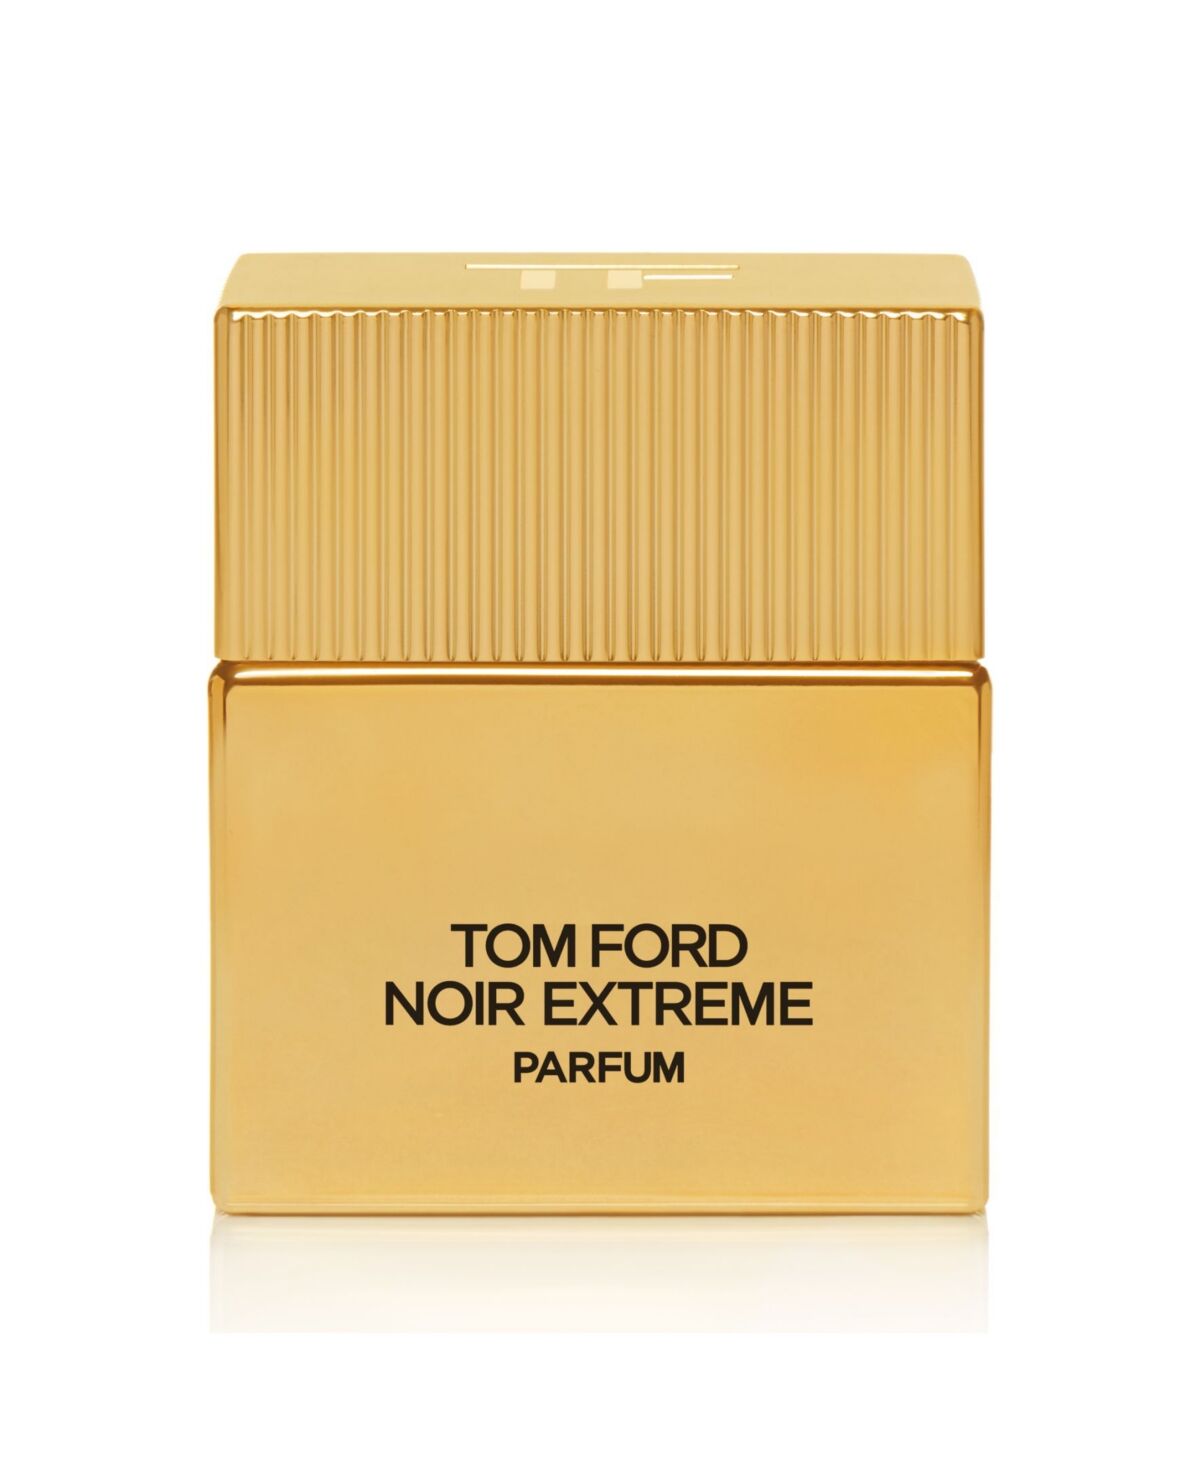 Tom Ford Noir Extreme Parfum, 1.7 oz. - No Col.or